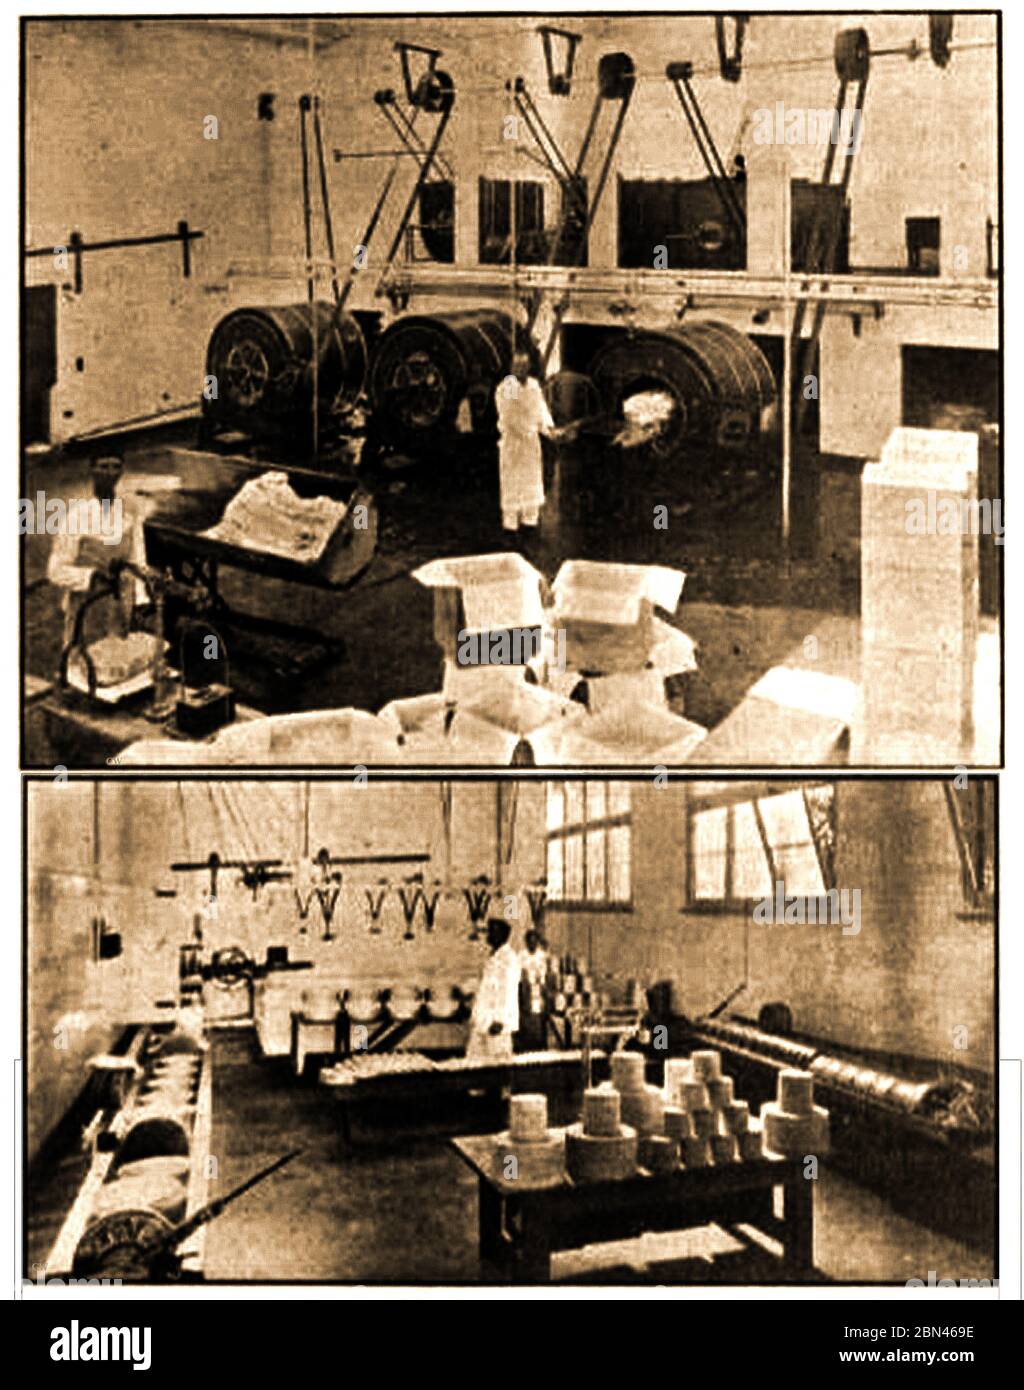 Industrie laitière en Grande-Bretagne - installations typiques de fabrication de beurre et de fromage dans une usine britannique de 1927. Banque D'Images